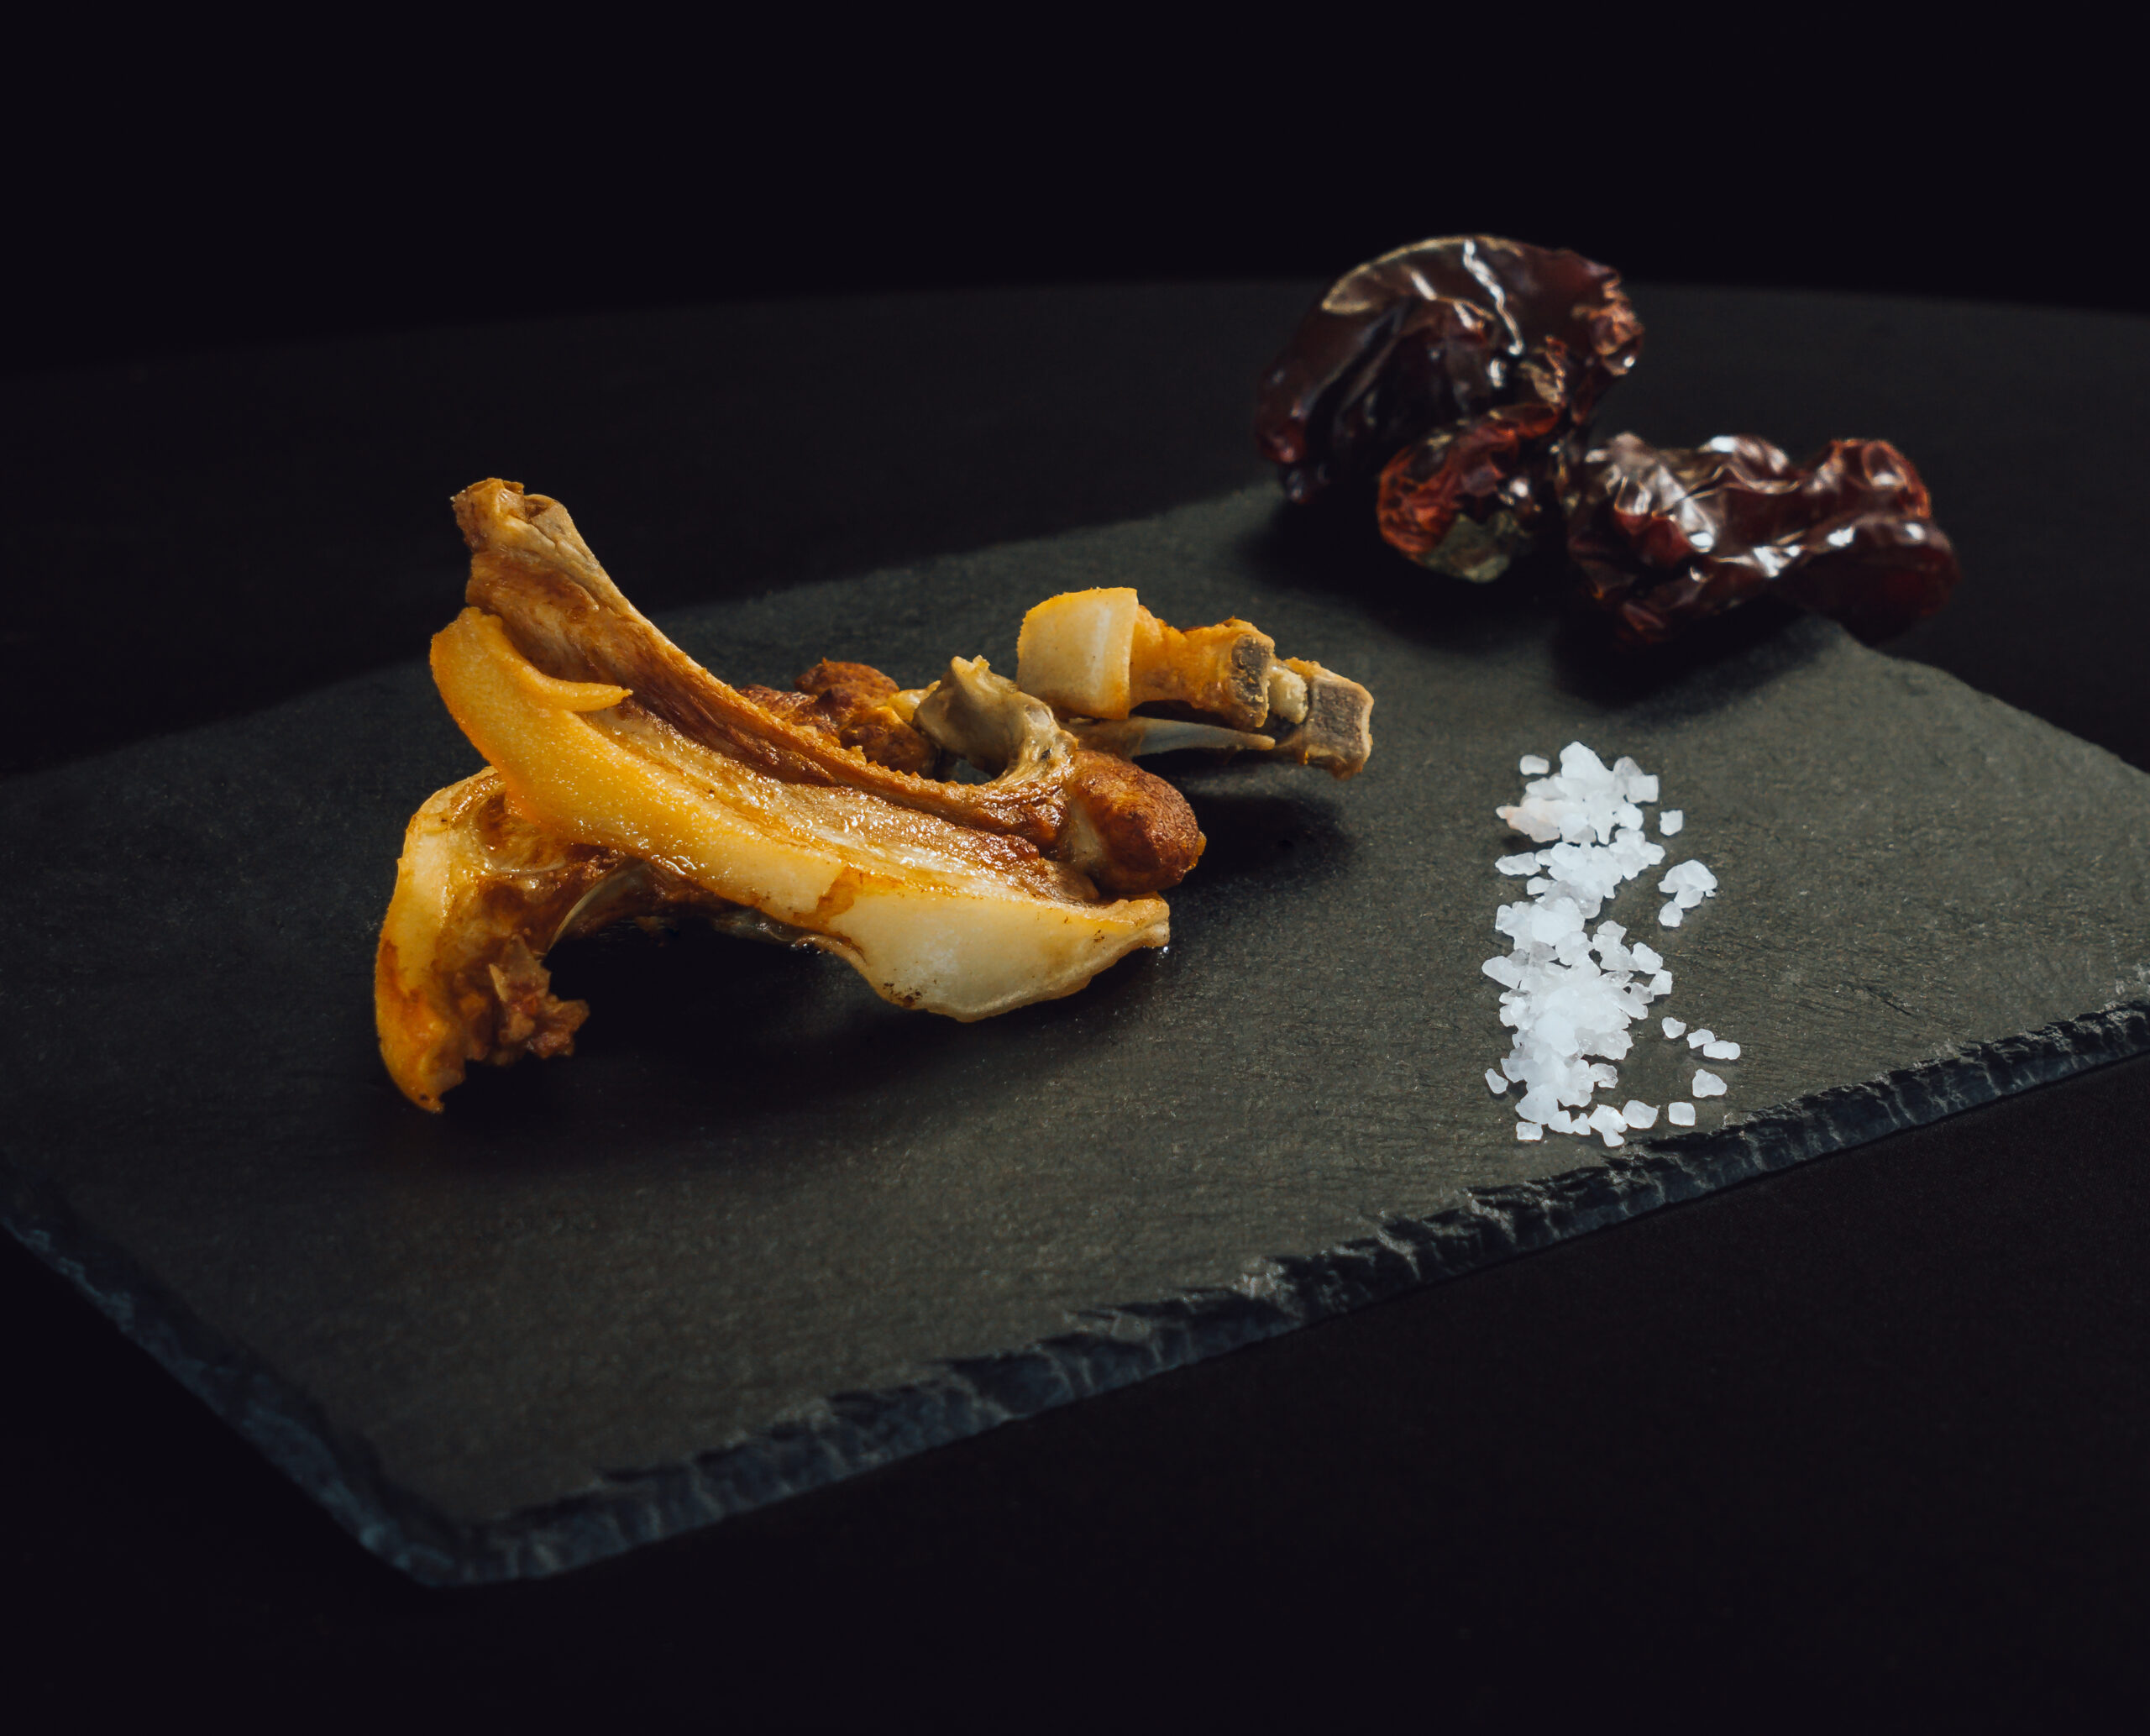 Chuletillas de cochinillo a la plancha: crujientes y deliciosas